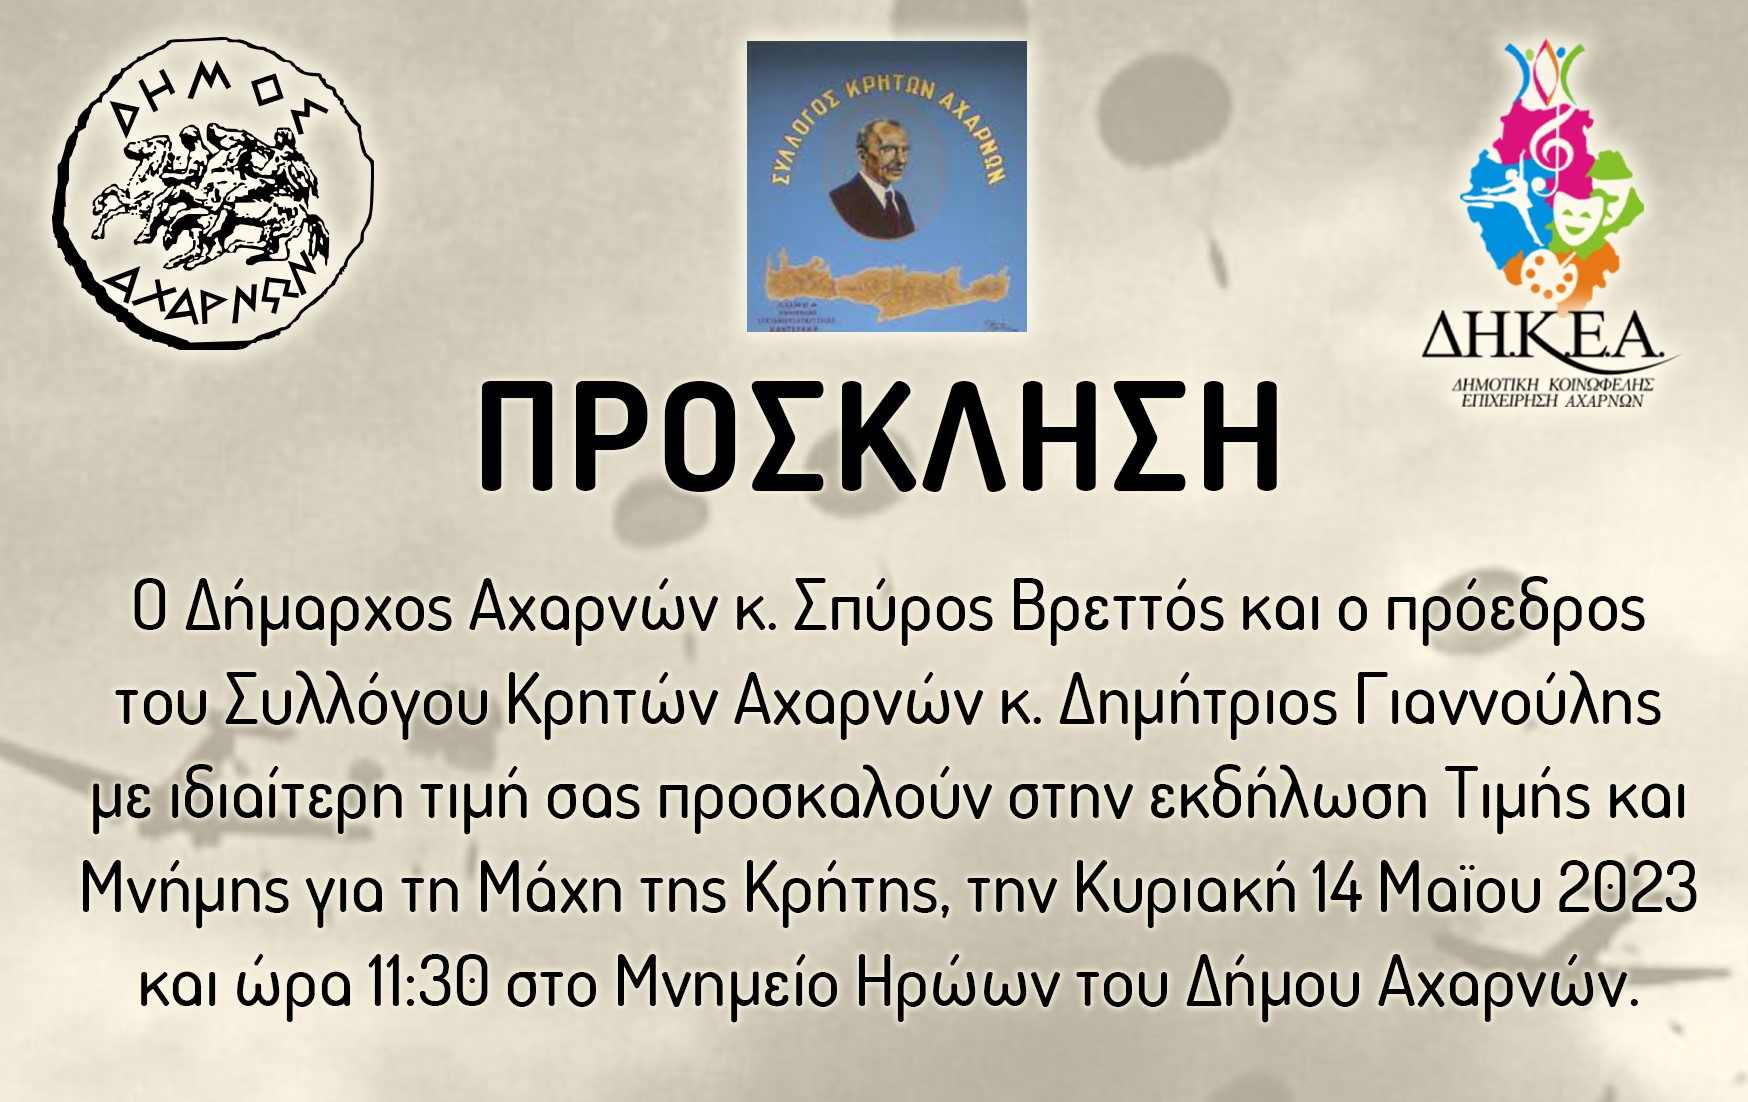 Εκδήλωση τιμής και μνήμης για τη Μάχη της Κρήτης την Κυριακή 14 Μαΐου